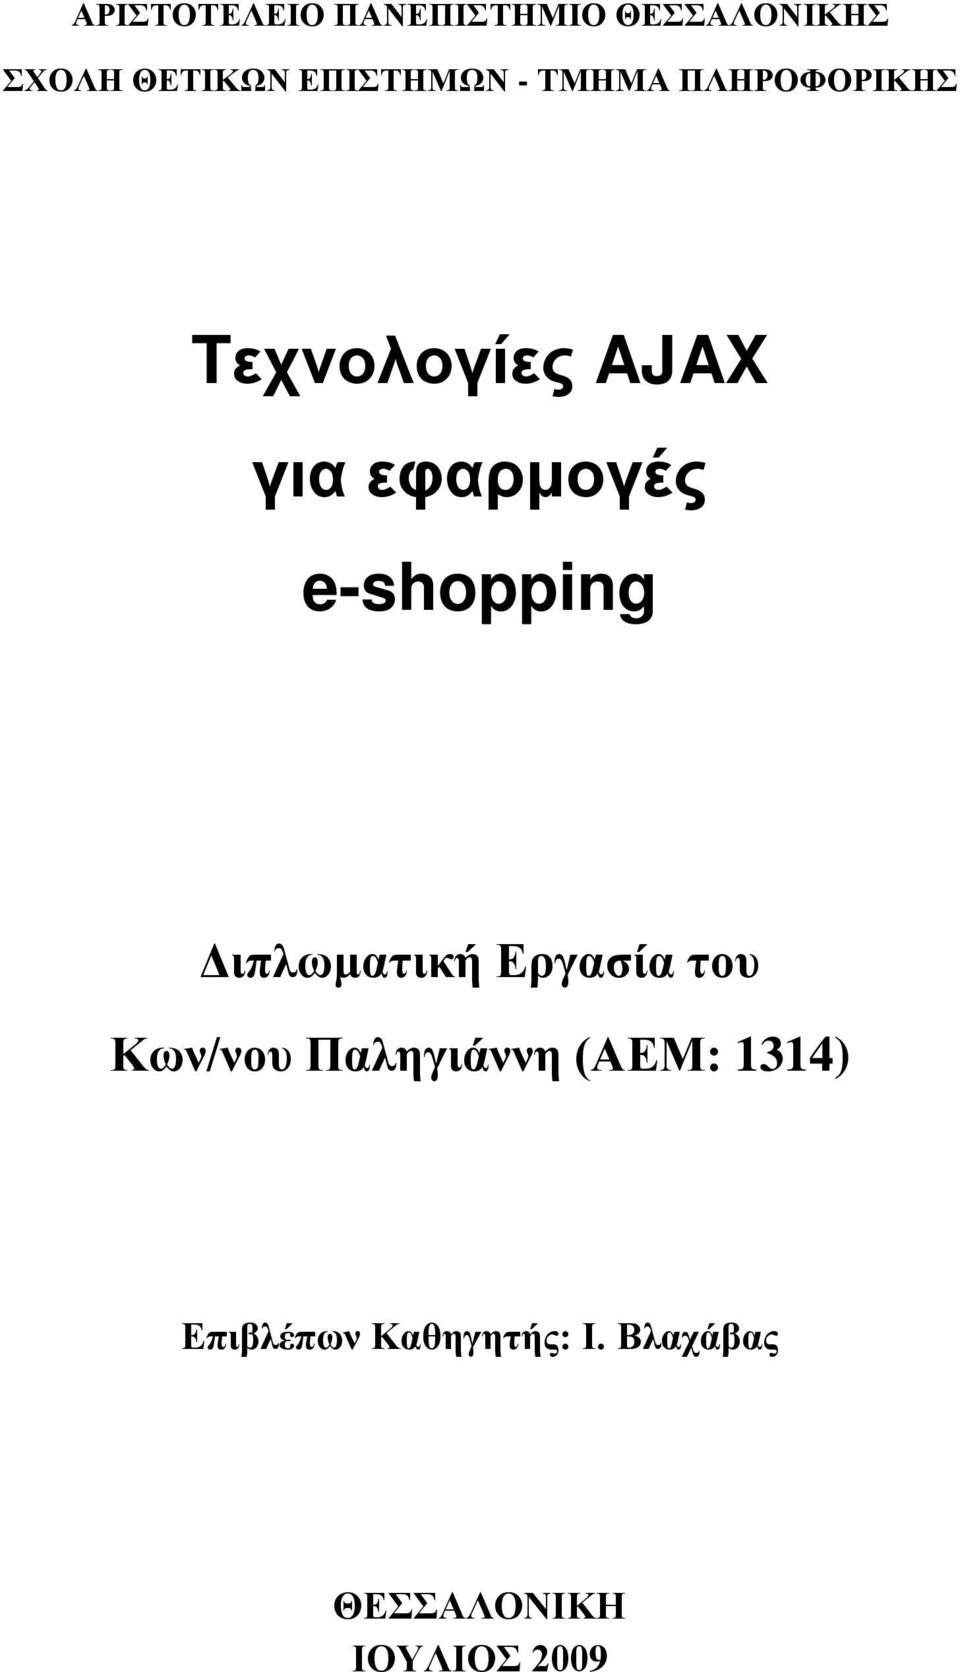 εφαρμογές e-shopping Διπλωματική Εργασία του Κων/νου